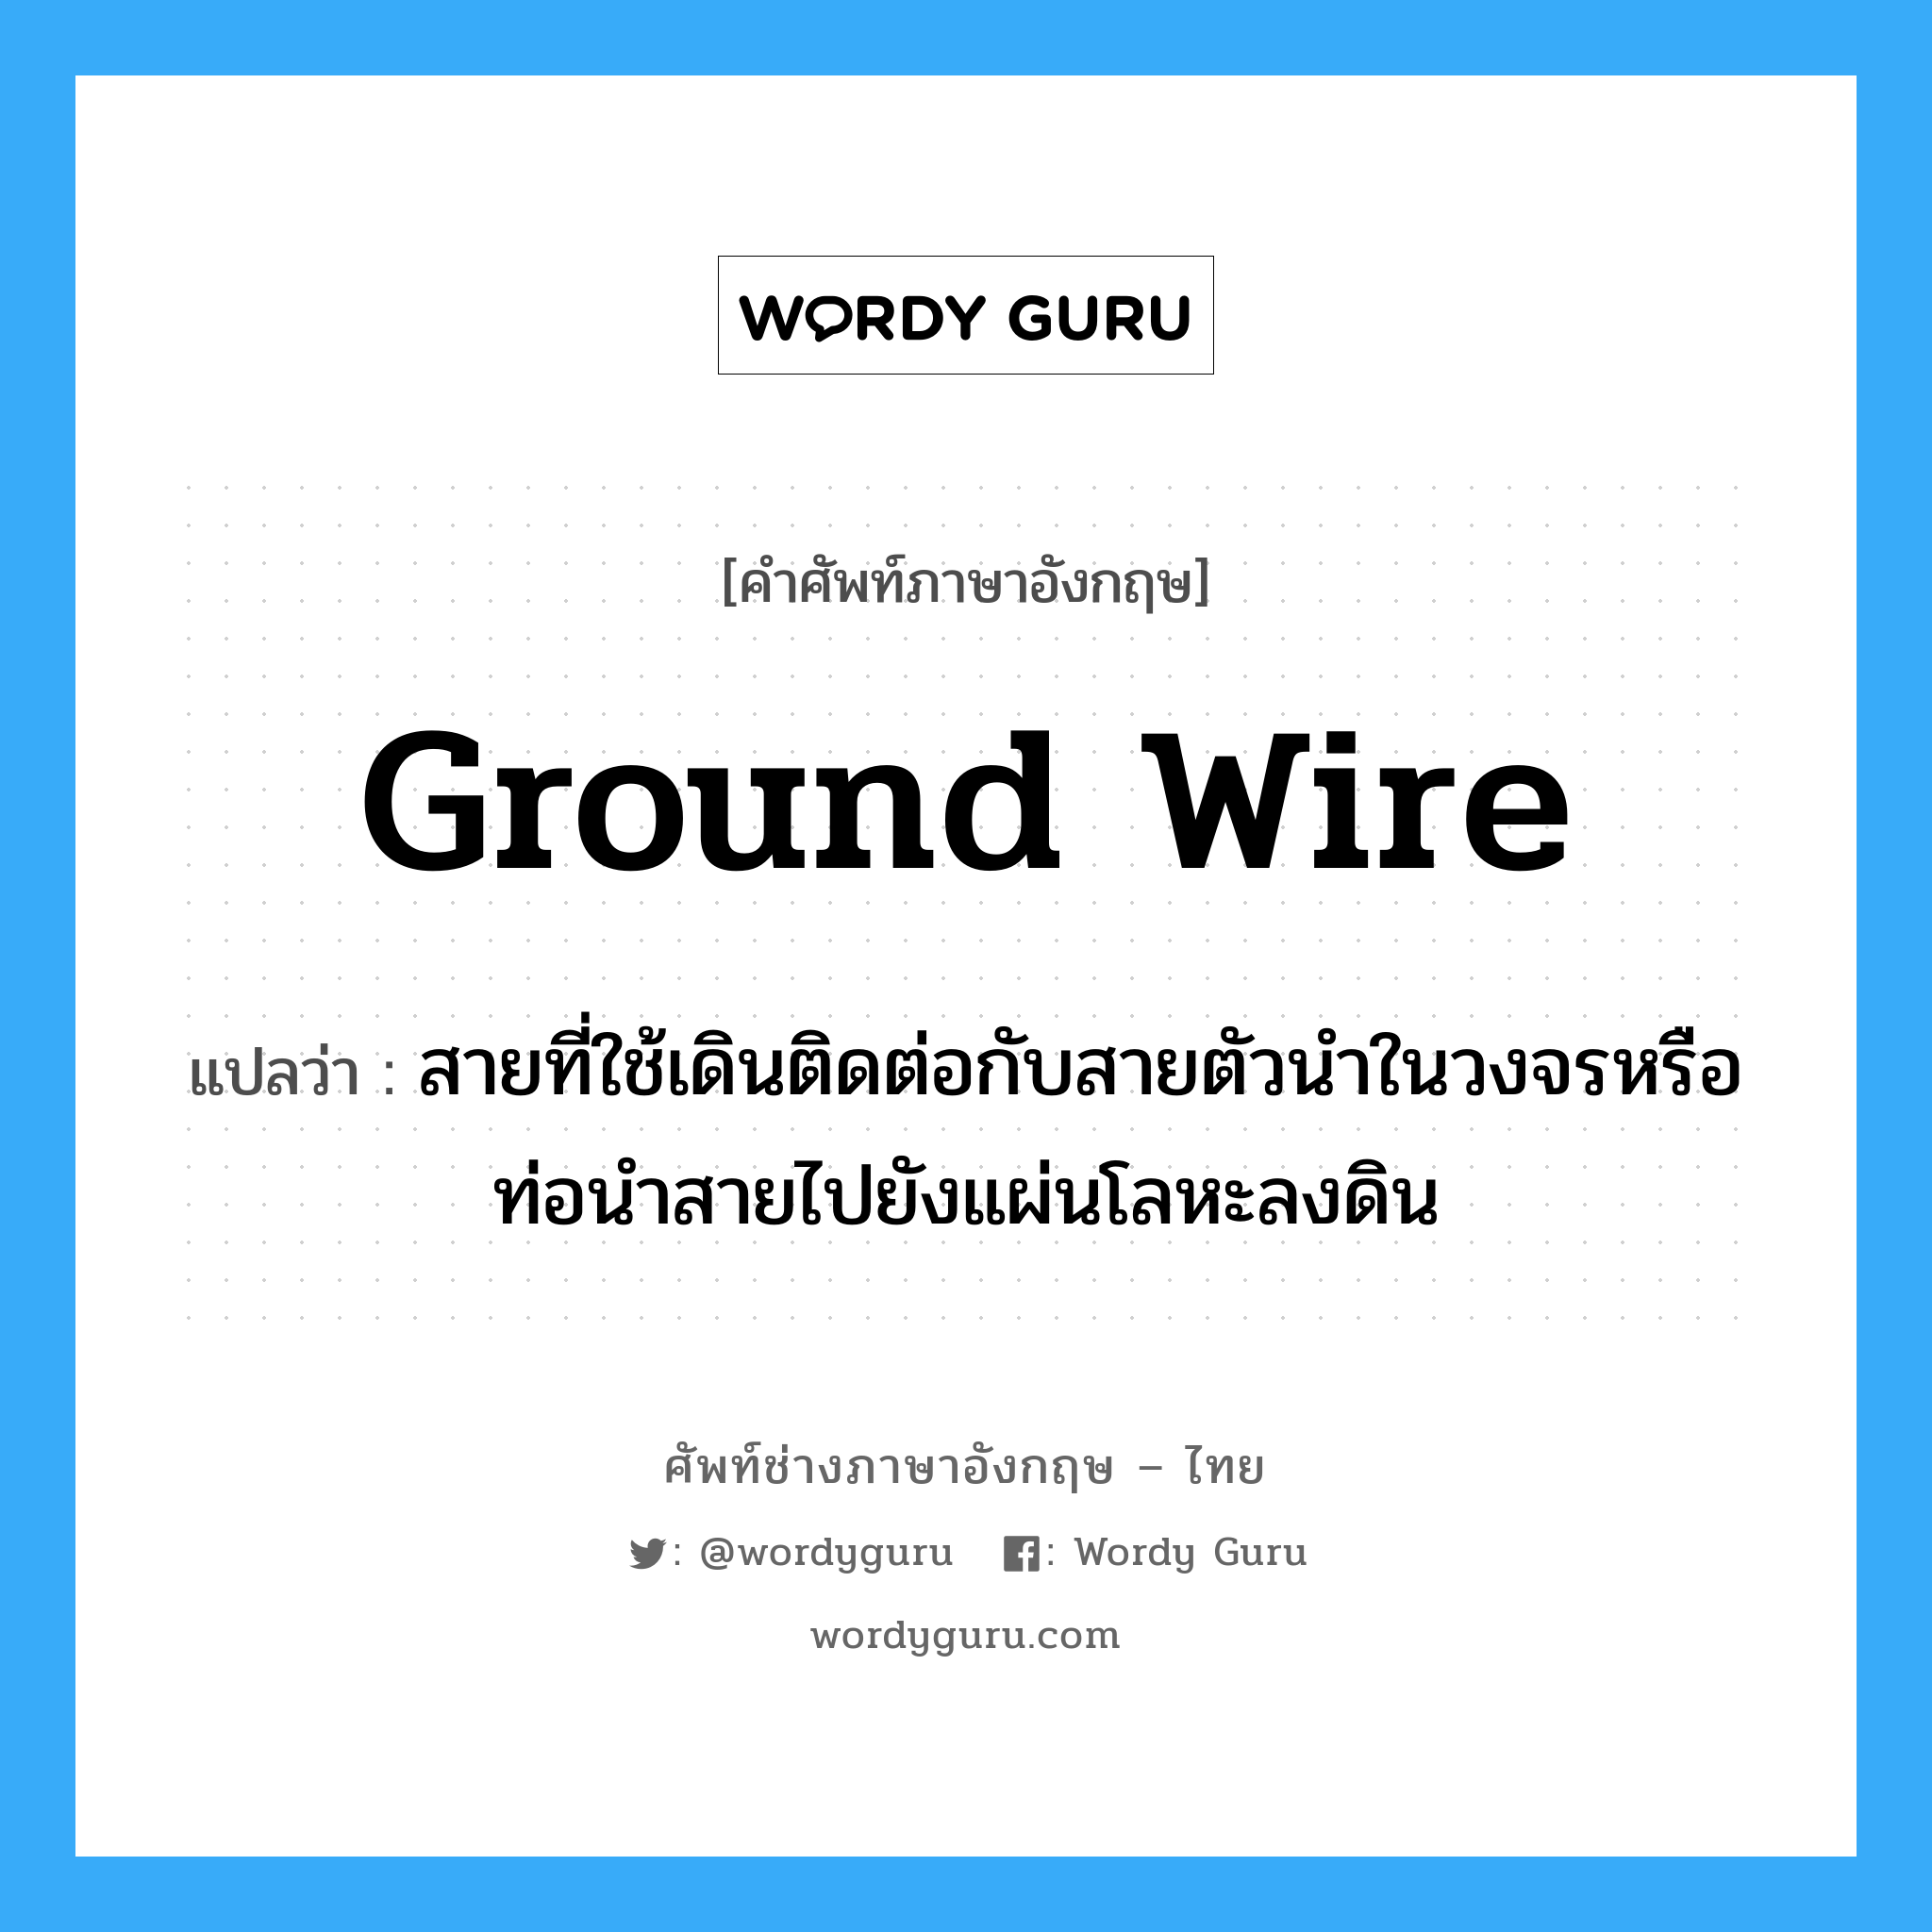 ground wire แปลว่า?, คำศัพท์ช่างภาษาอังกฤษ - ไทย ground wire คำศัพท์ภาษาอังกฤษ ground wire แปลว่า สายที่ใช้เดินติดต่อกับสายตัวนำในวงจรหรือท่อนำสายไปยังแผ่นโลหะลงดิน